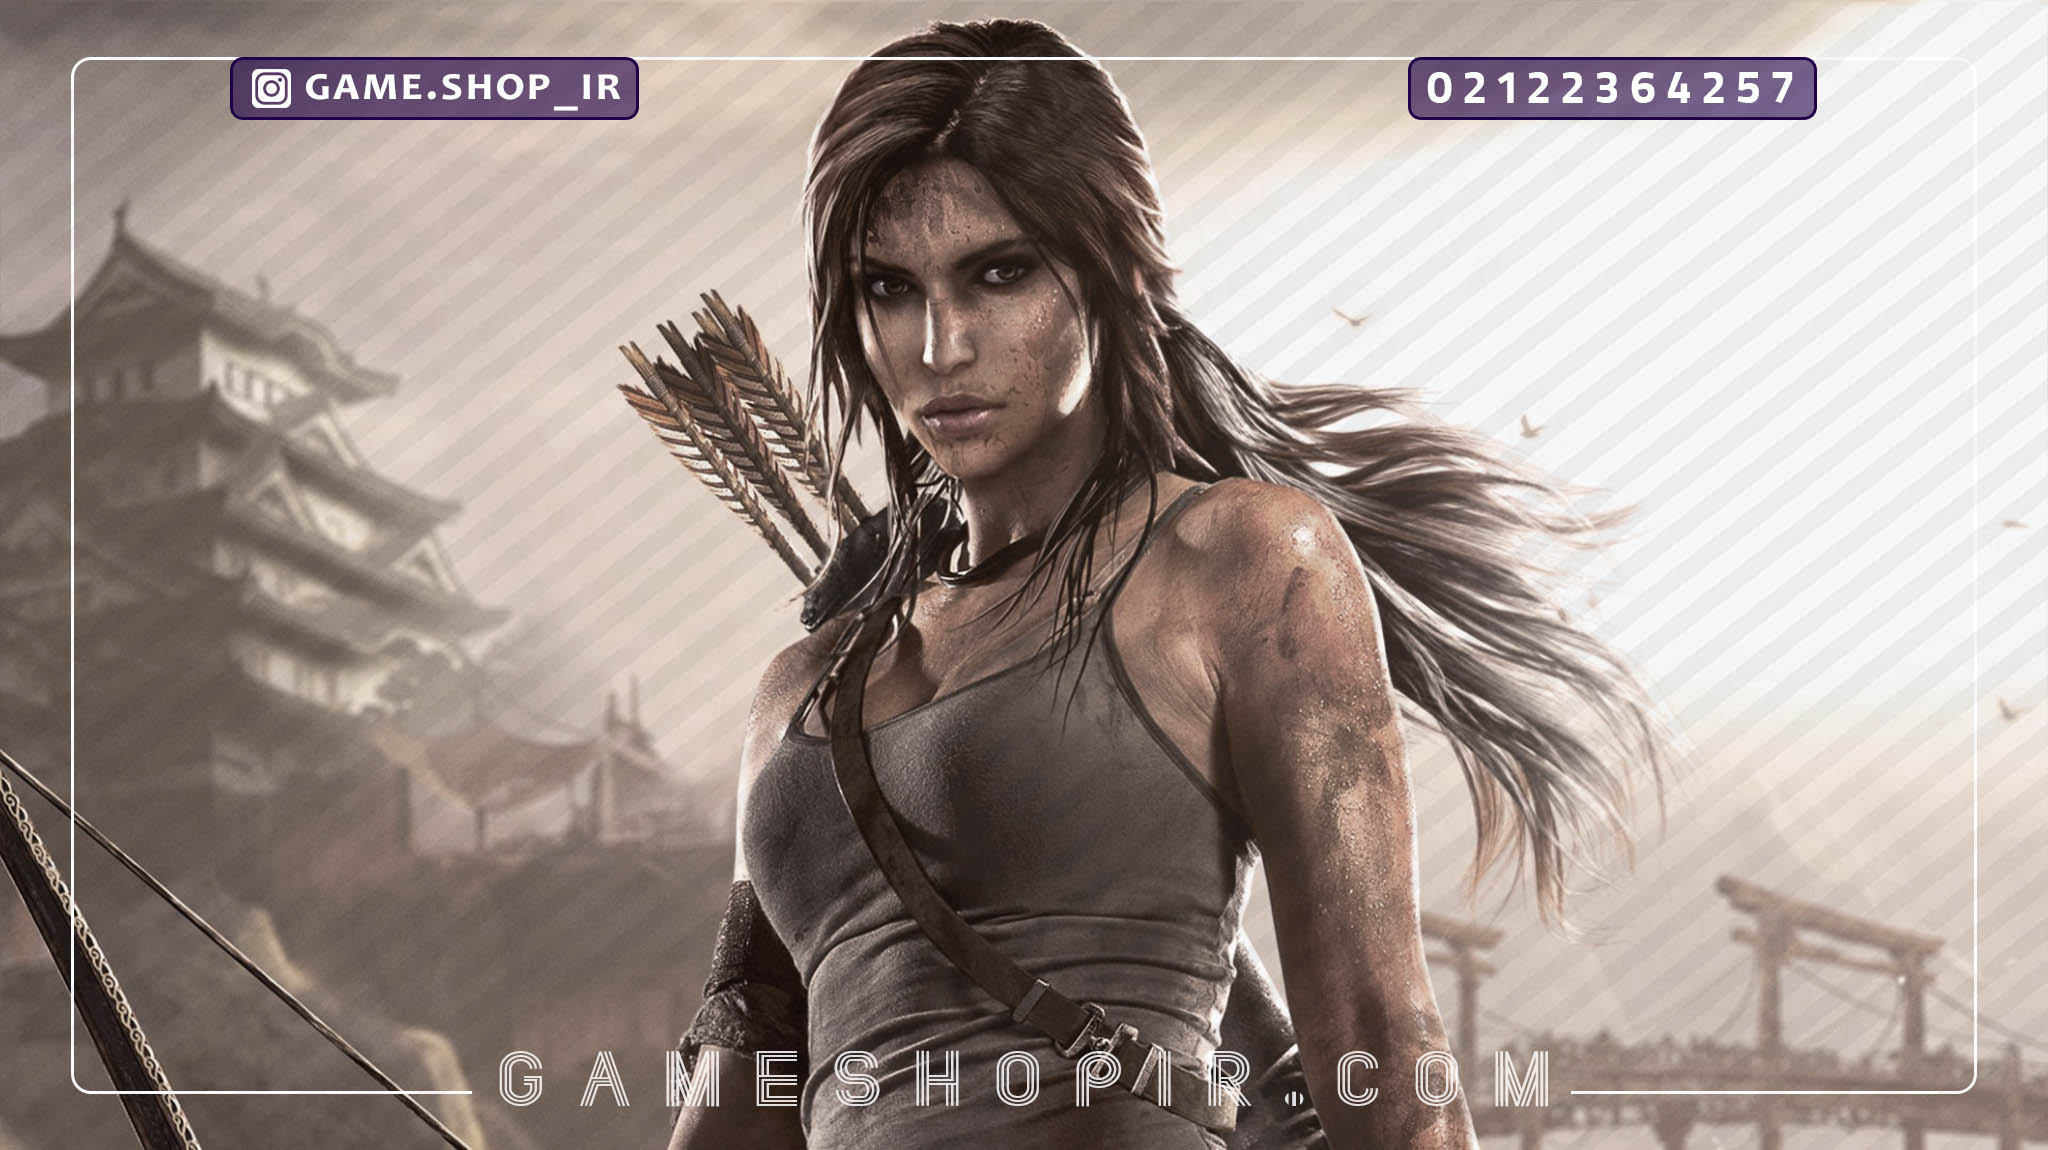 آخرین اطلاعات از نسخه بعدی سری Tomb Raider